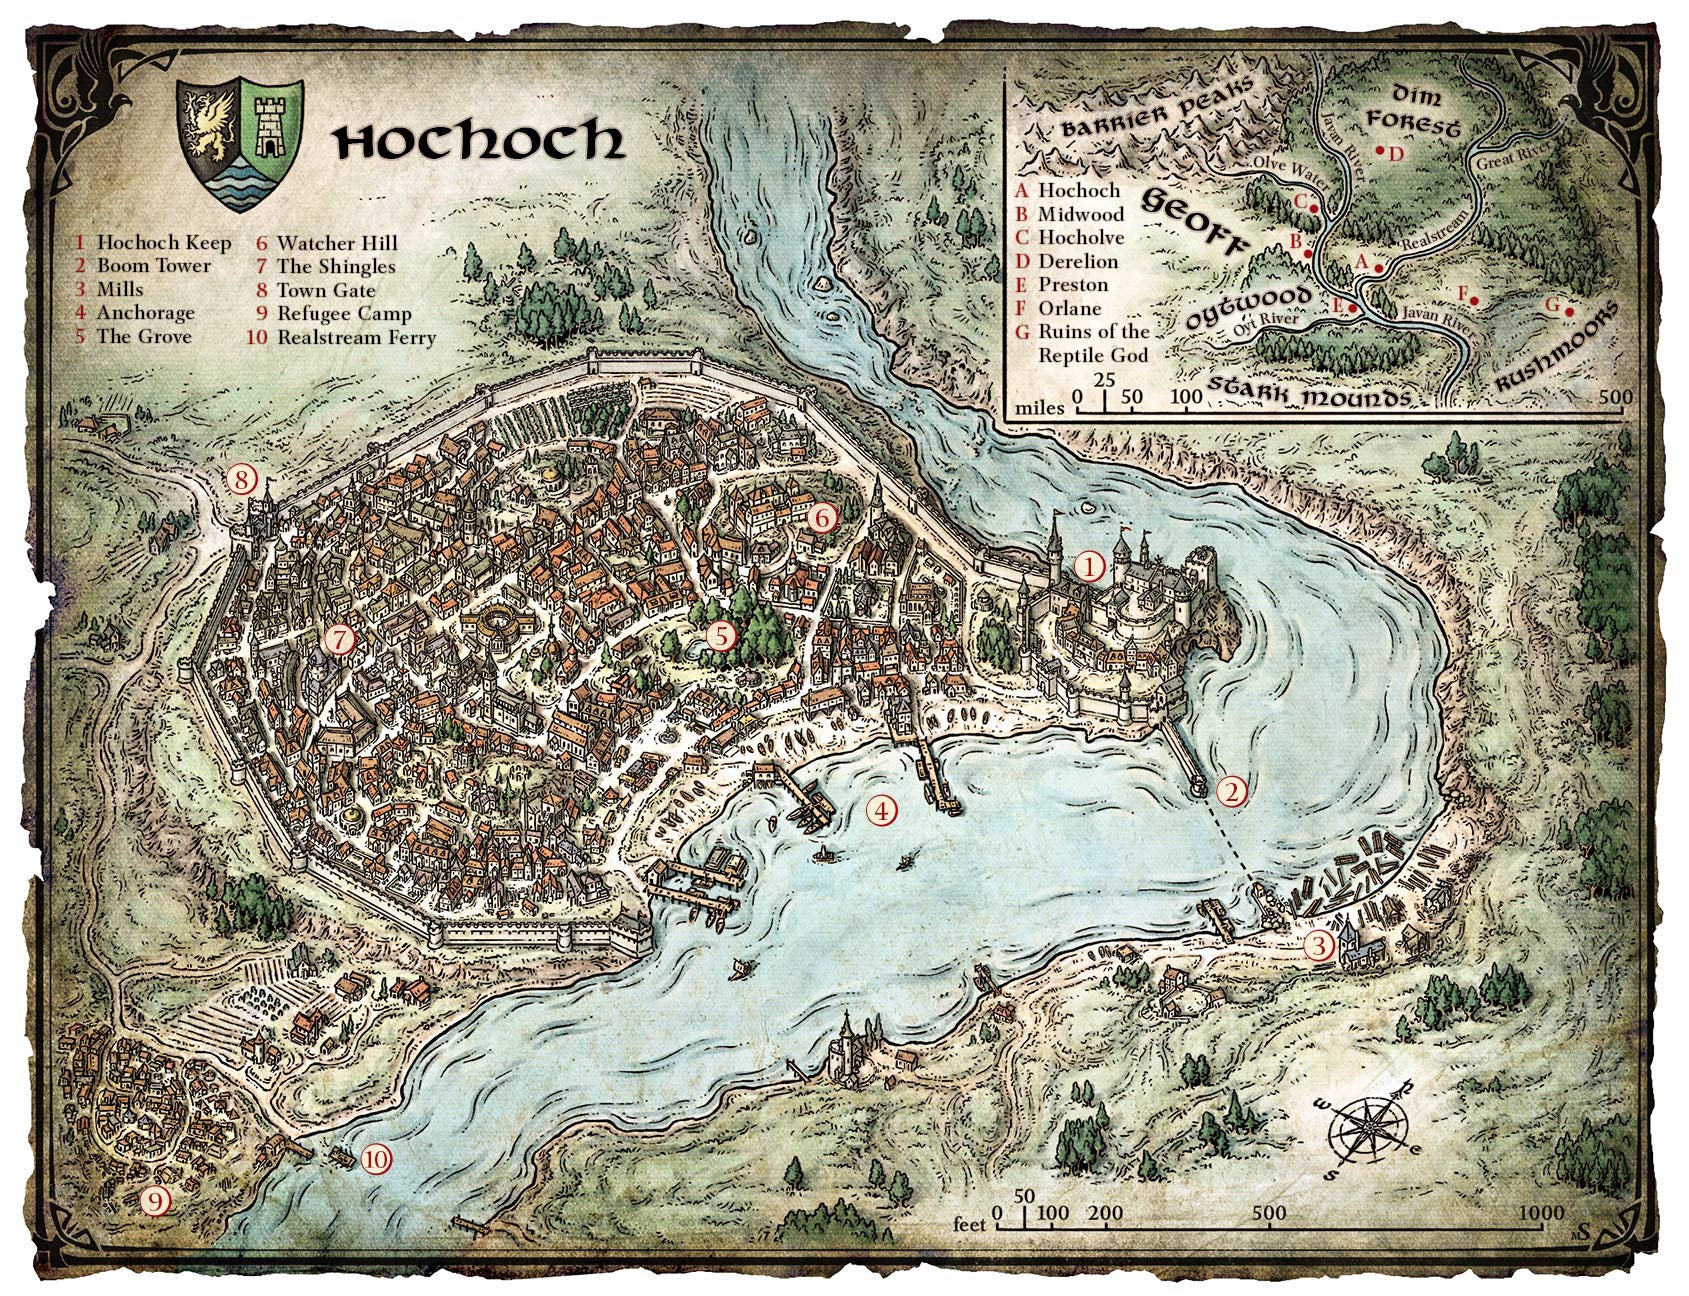 Una mappa di una città fantastica situata in una svolta del fiume. È una città dallo stile medievale, all'interno delle mura di un castello